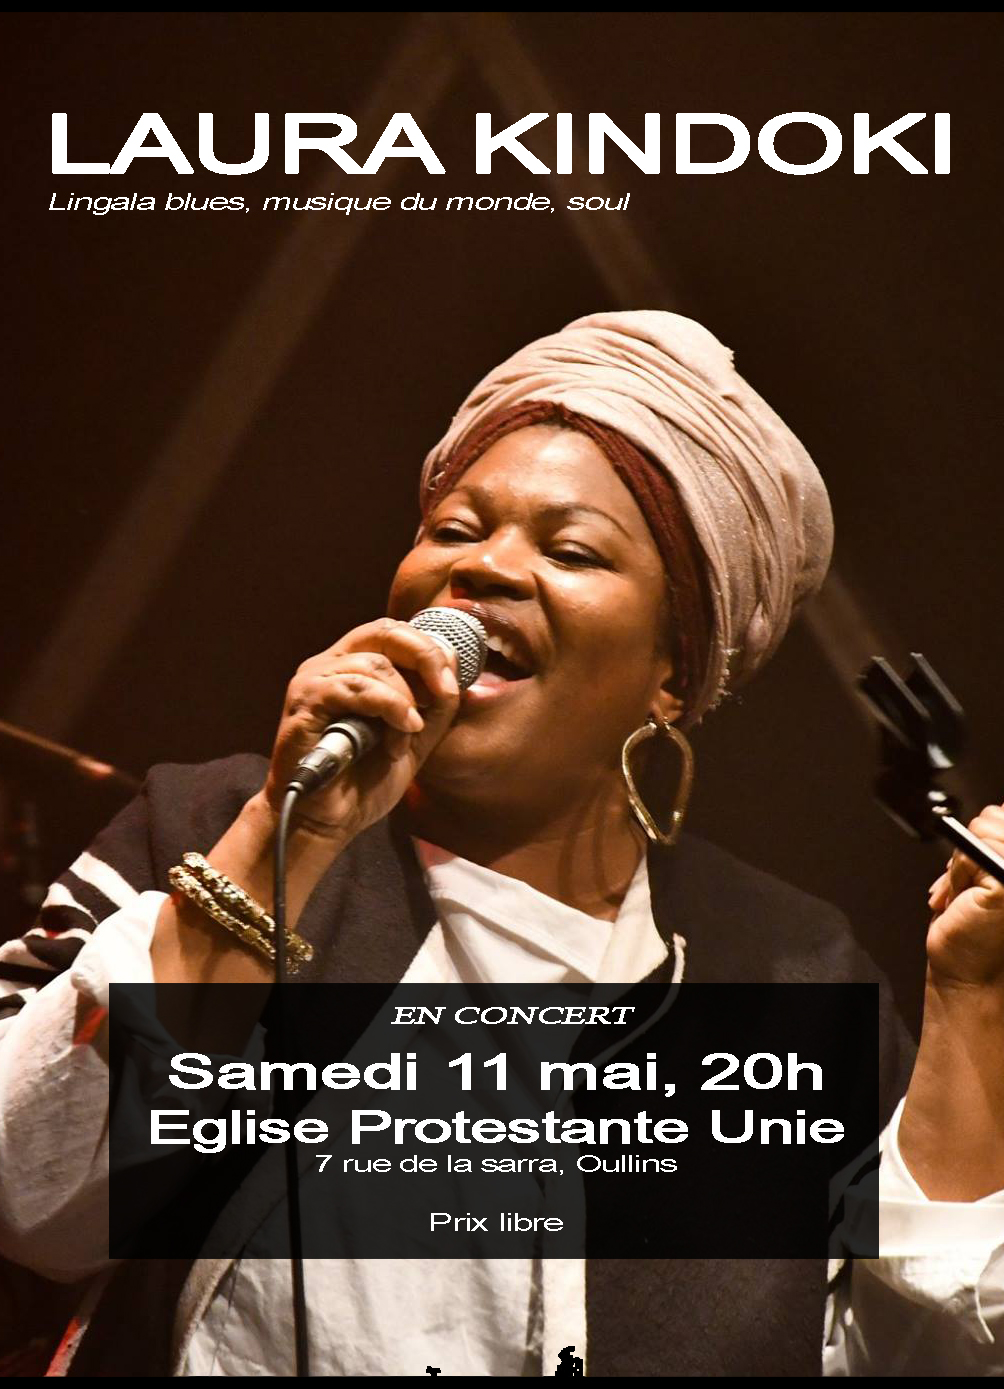 Laura Kindoki en concert le samedi 11 mai à la Sarra